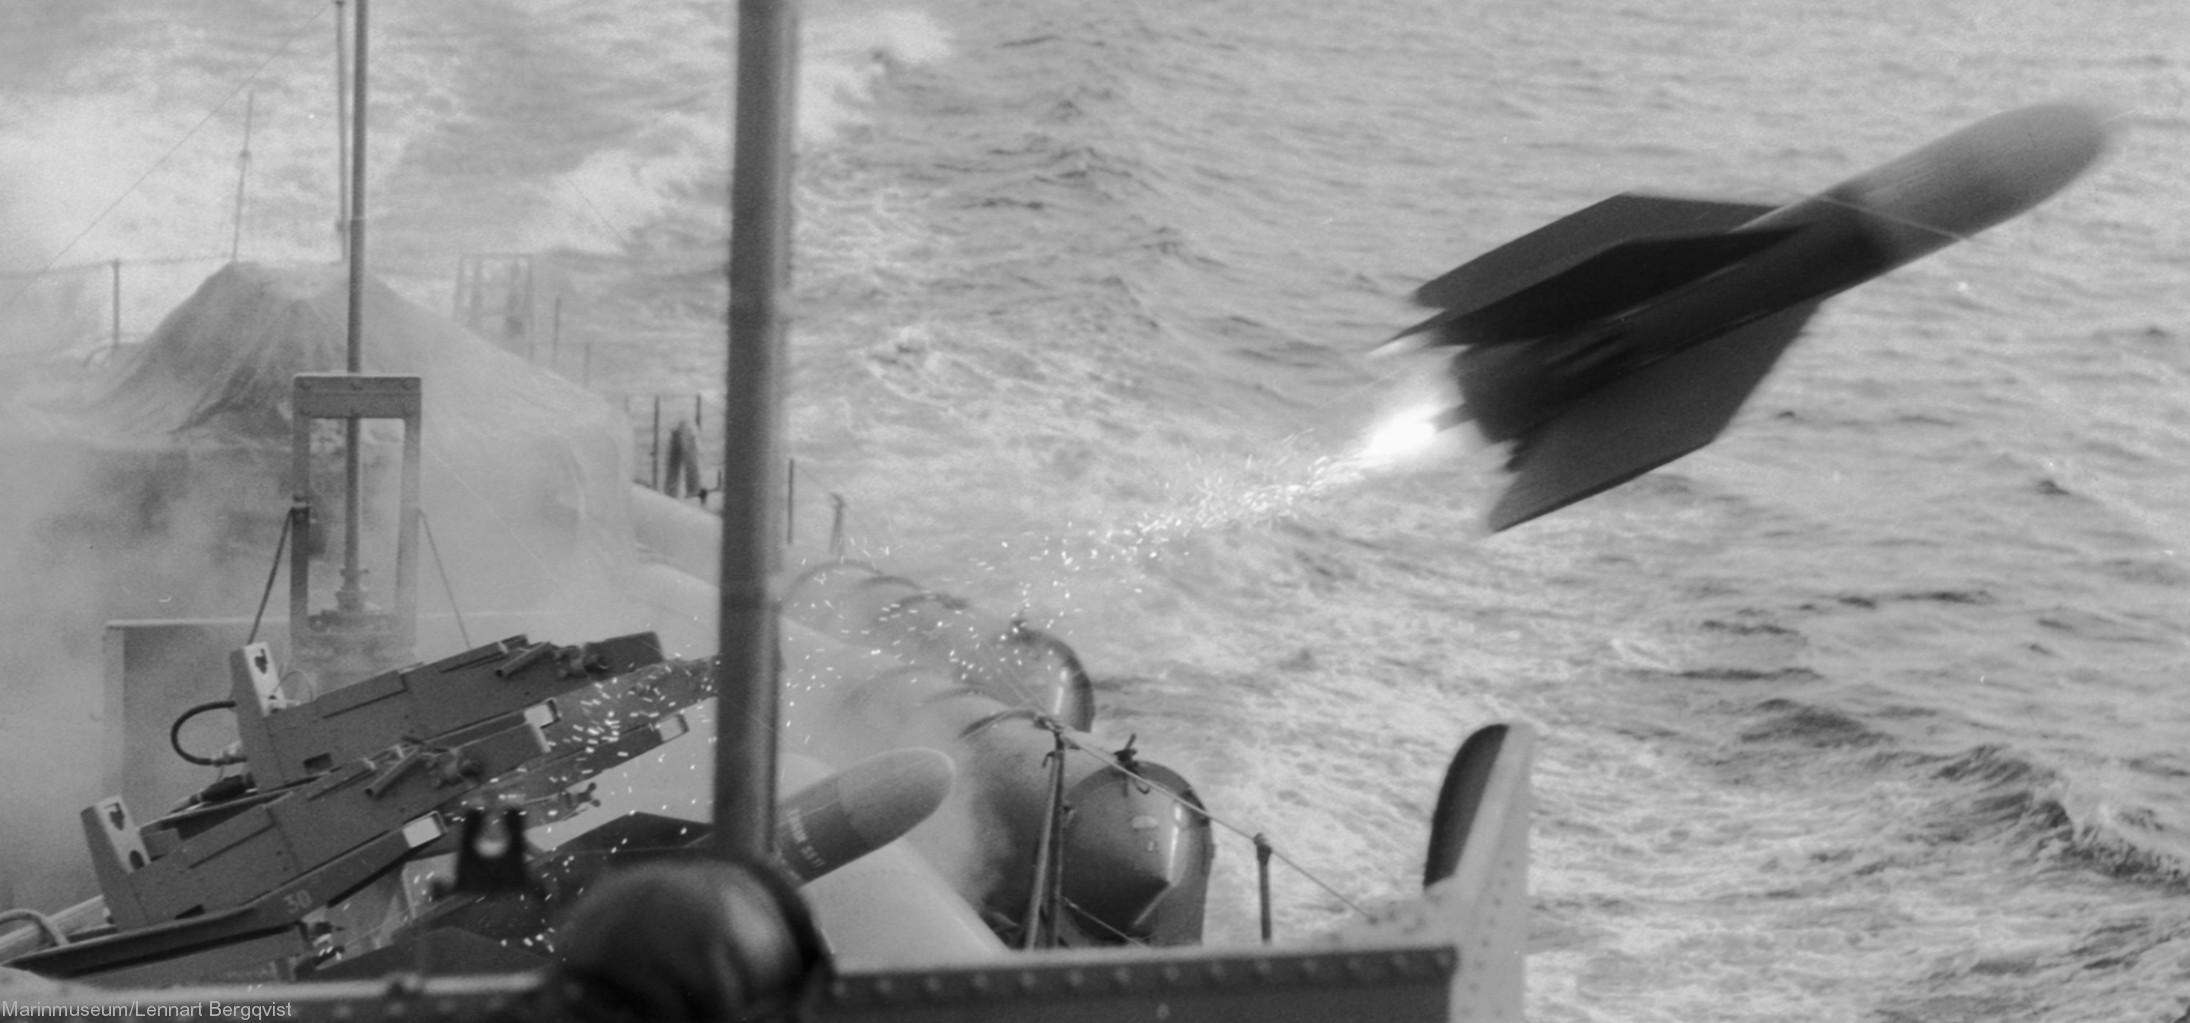 plejad class fast attack craft torpedo boat vessel swedish navy svenska marinen nord aviation ss.11 missile 09